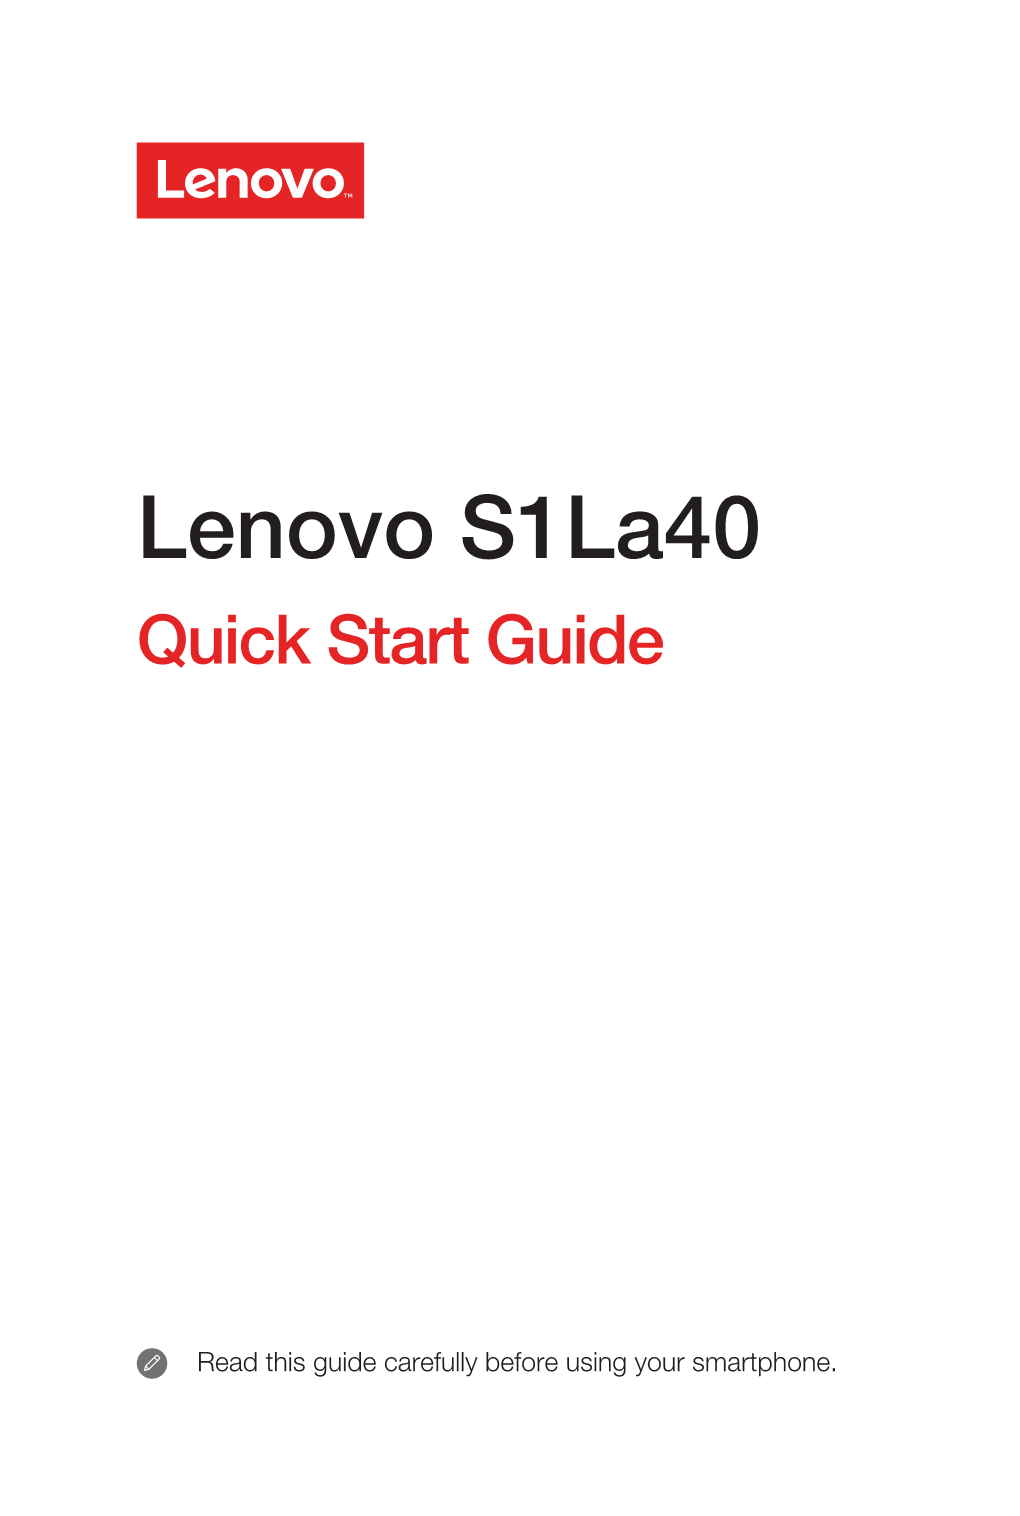 Lenovo S1la40 Quick Start Guide